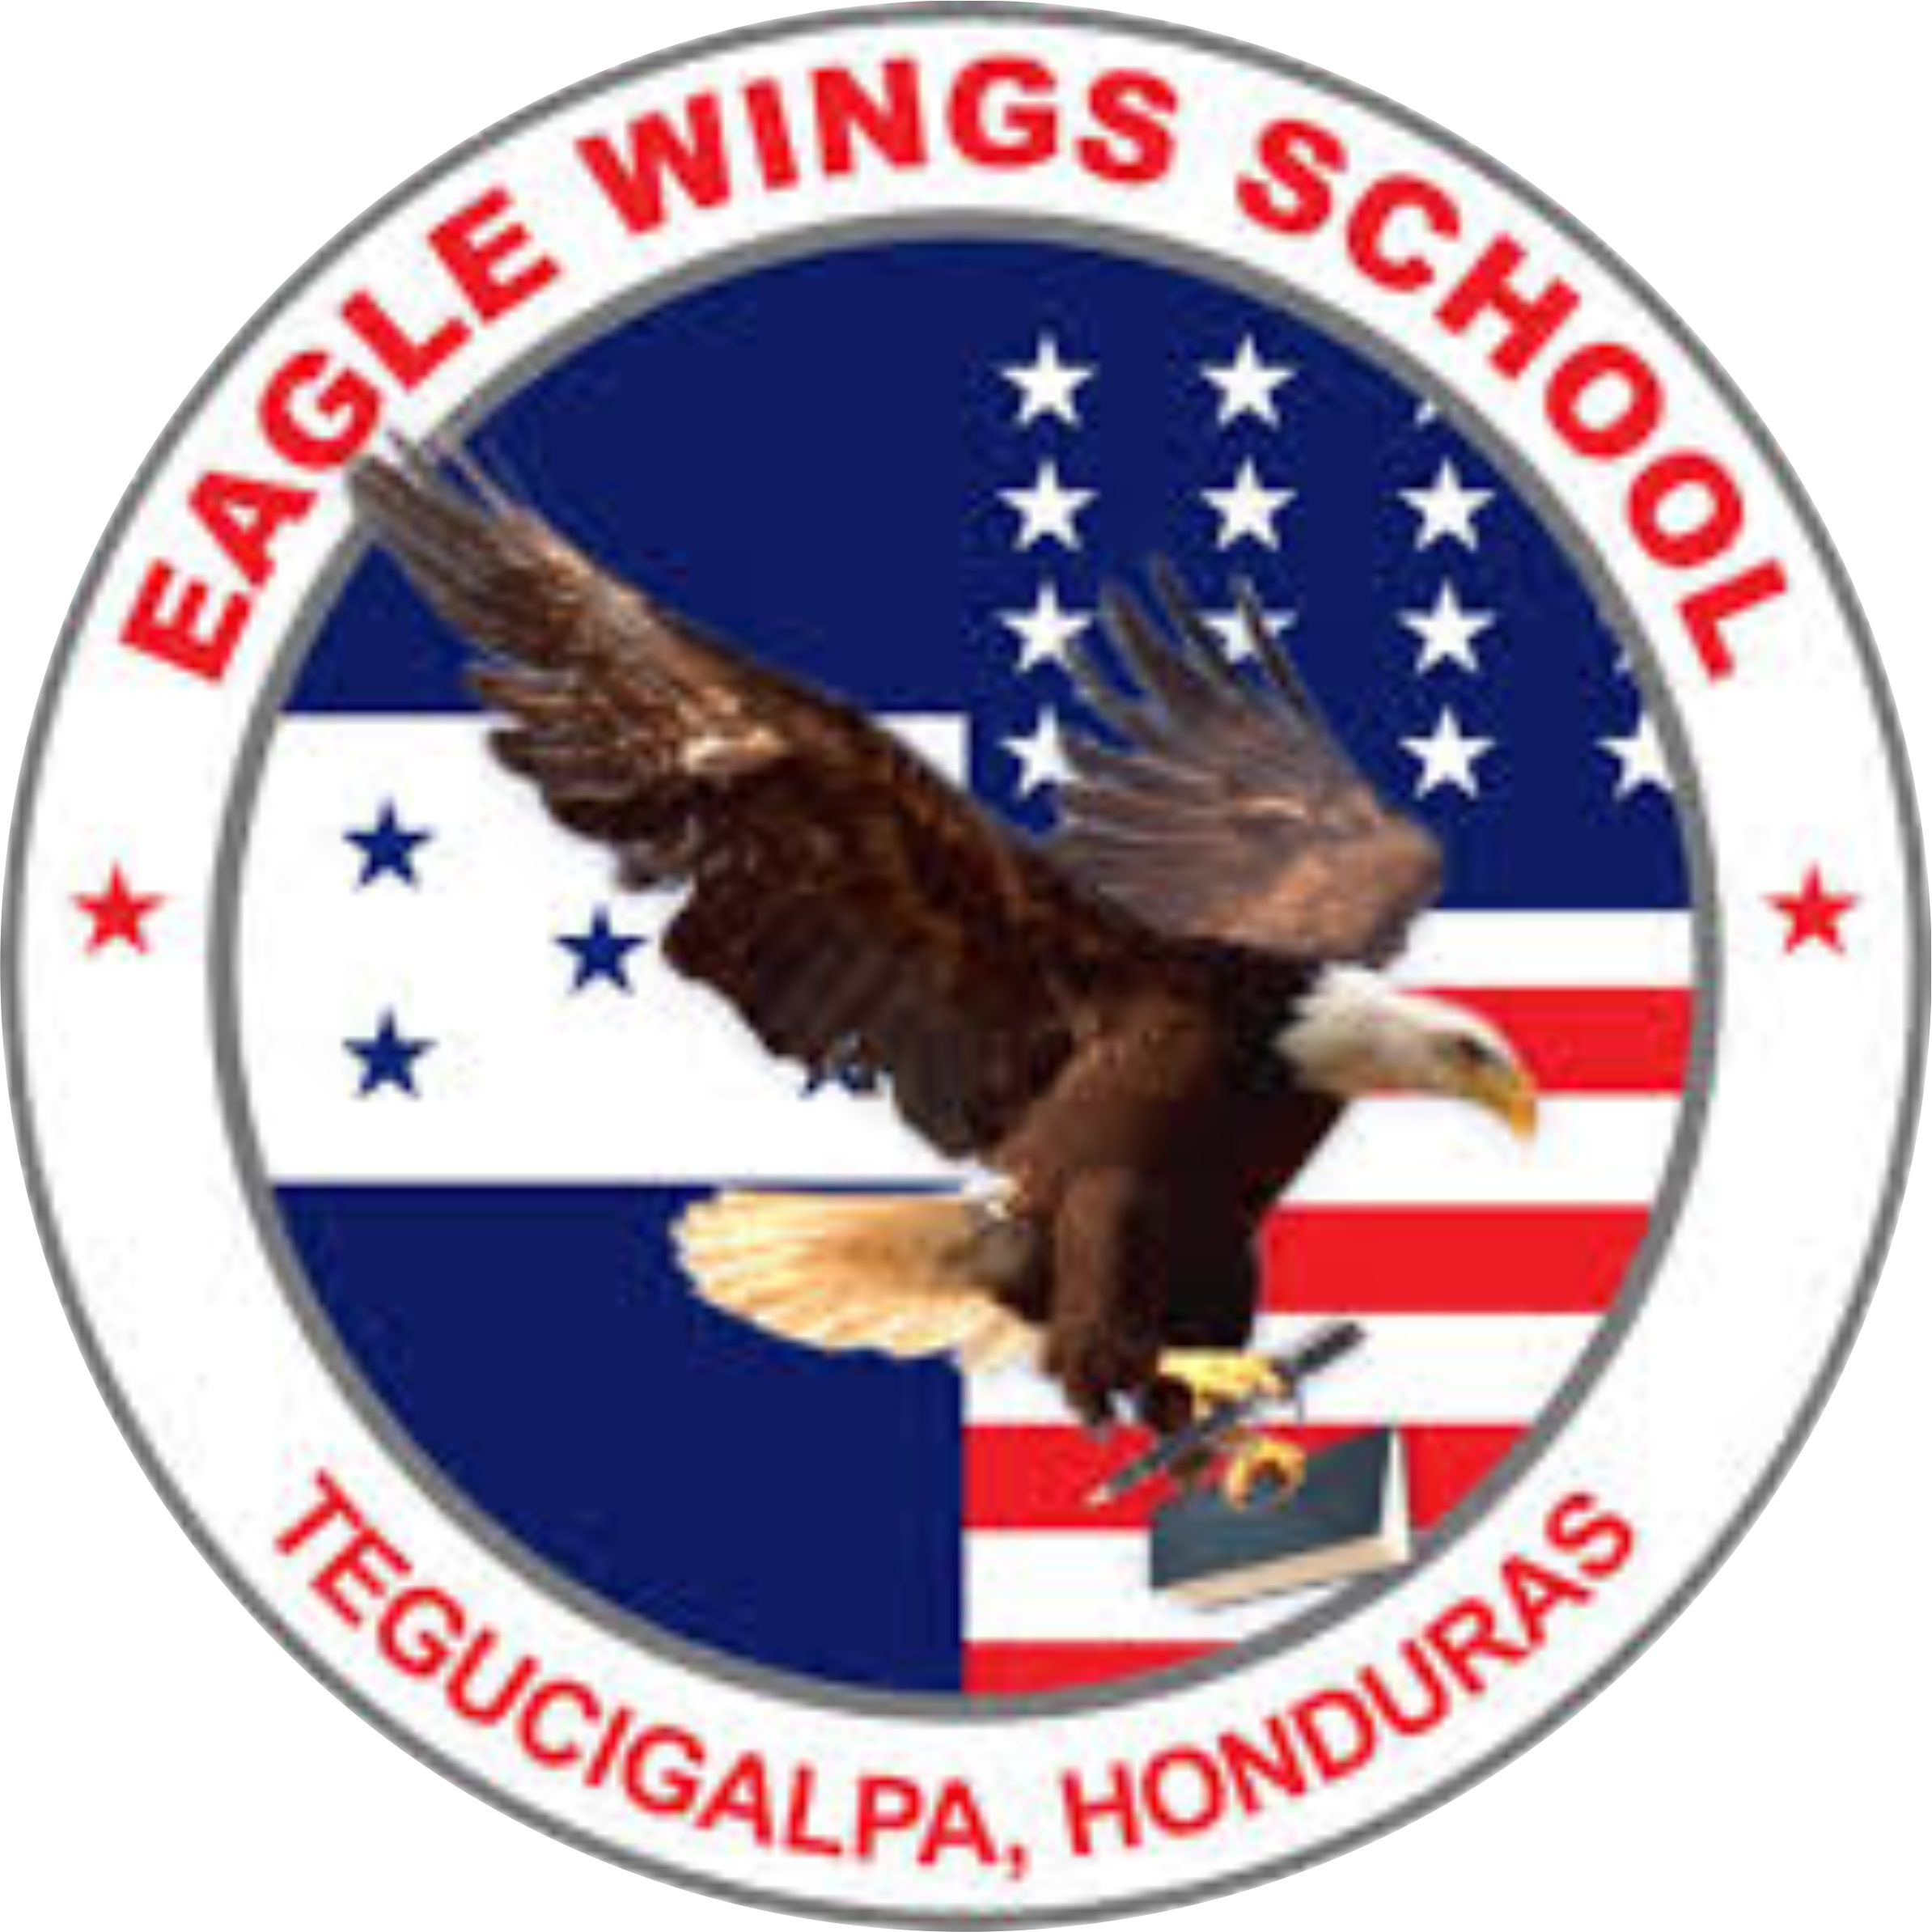 Eagle Wings School